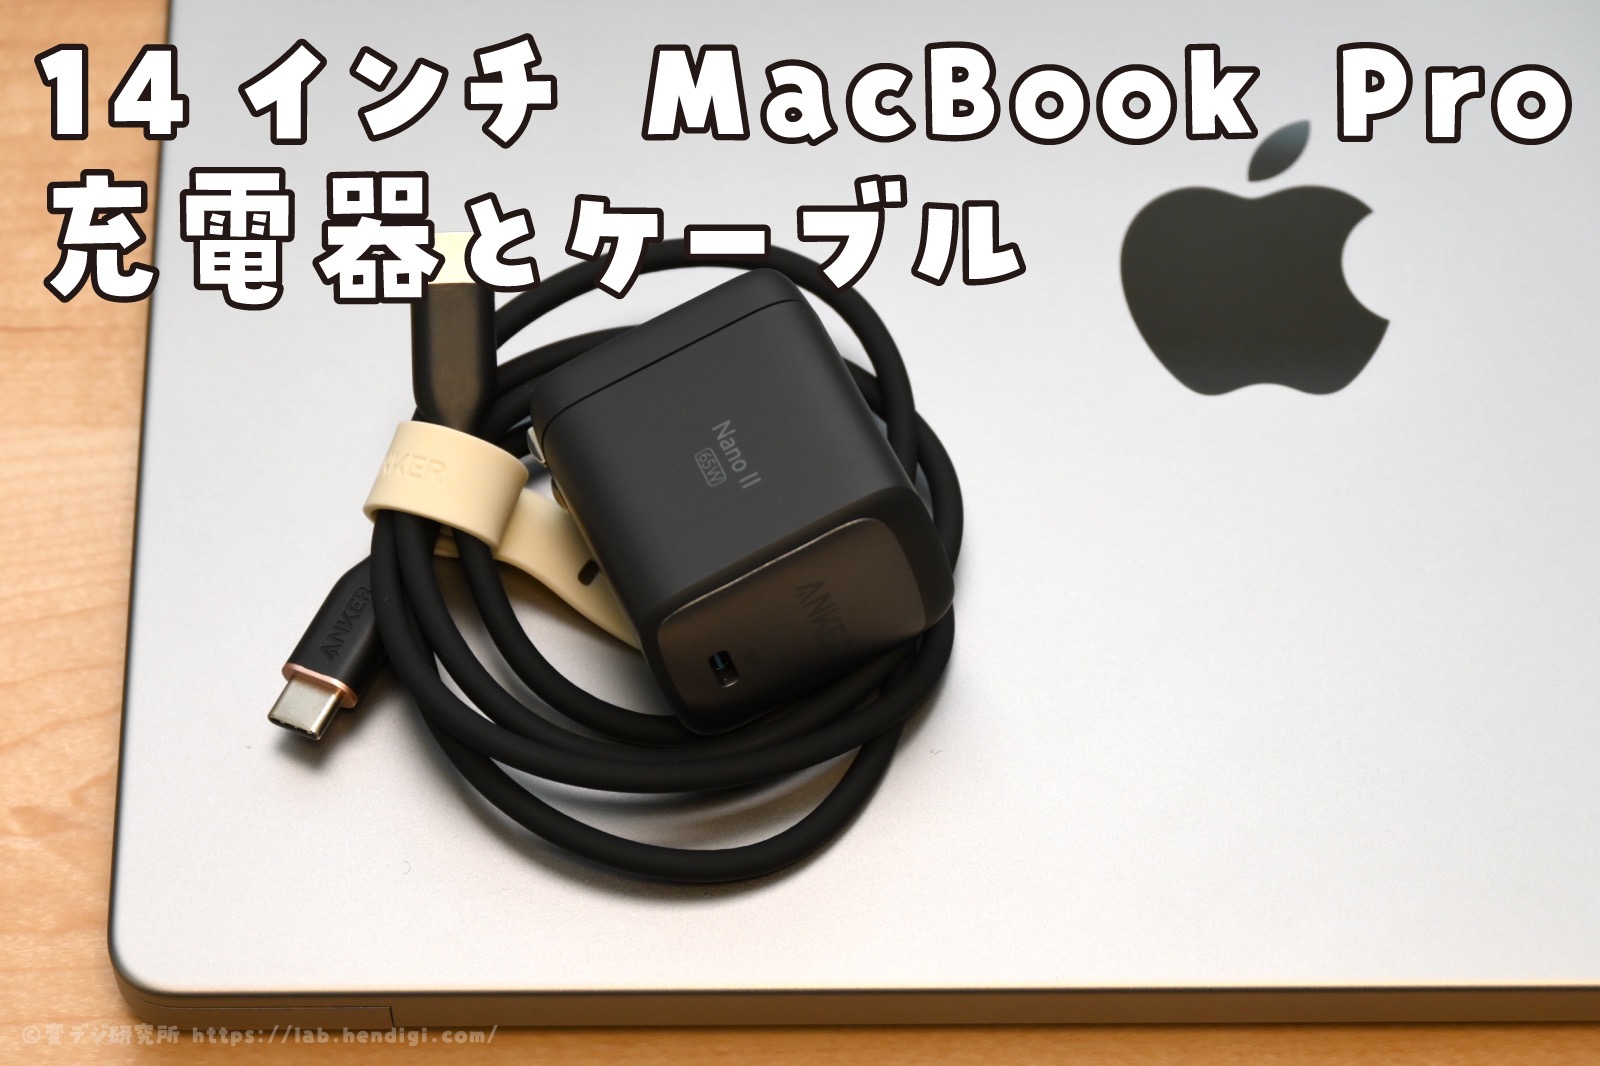 14インチ MacBook Proにオススメの充電器とケーブルをセットで買ってみた